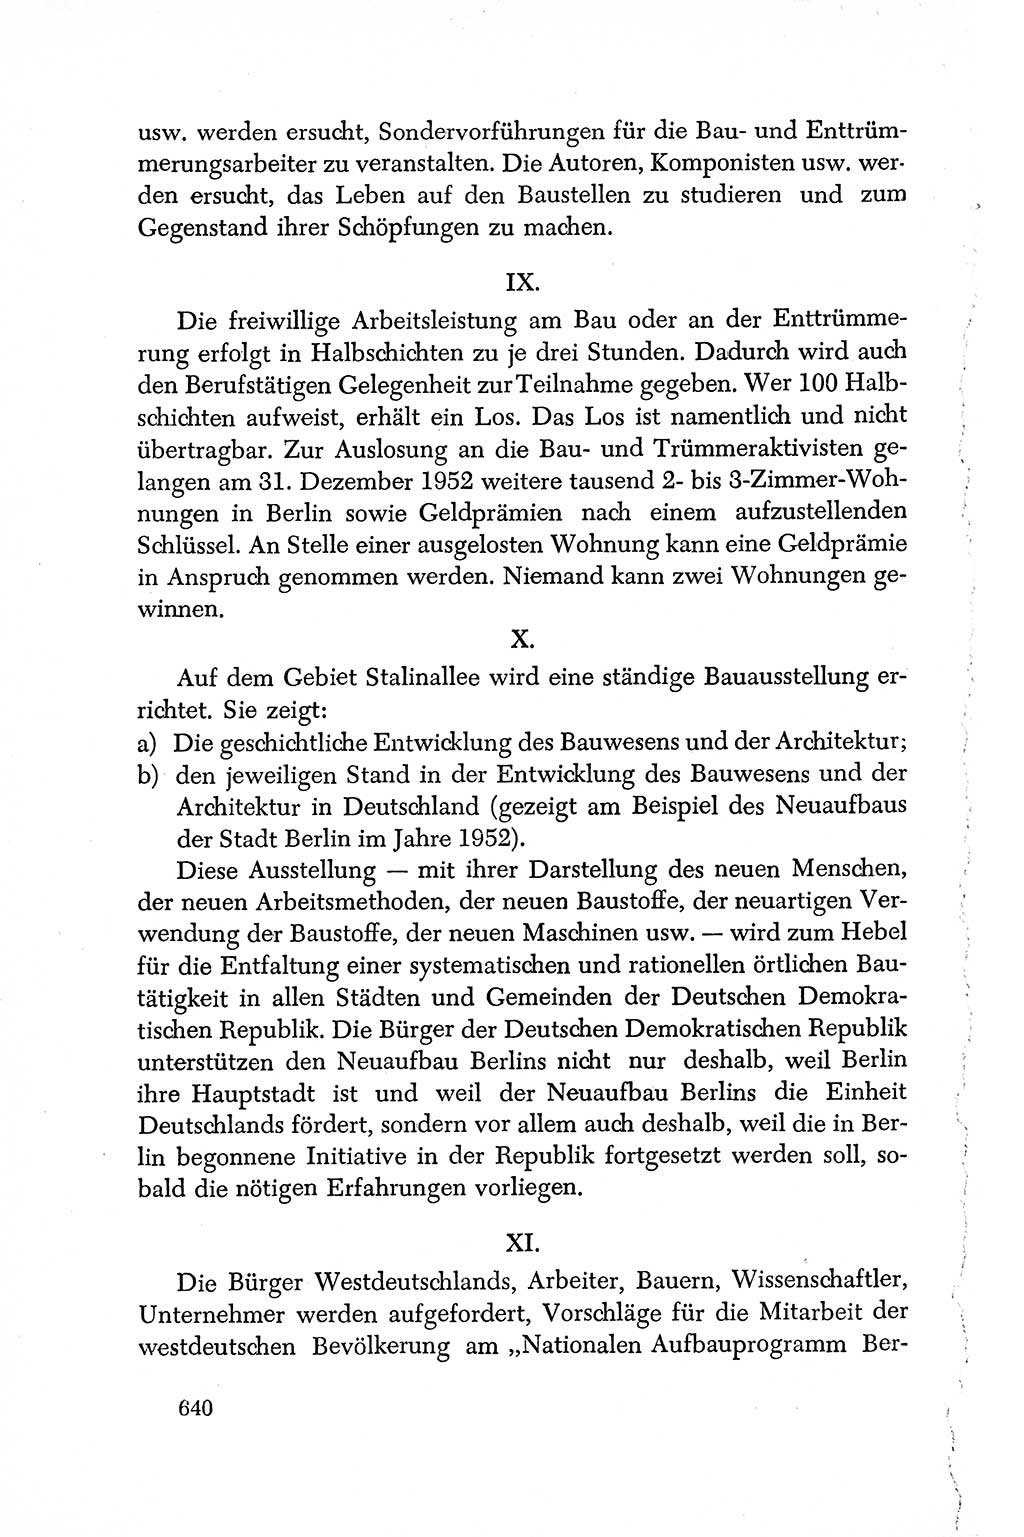 Dokumente der Sozialistischen Einheitspartei Deutschlands (SED) [Deutsche Demokratische Republik (DDR)] 1950-1952, Seite 640 (Dok. SED DDR 1950-1952, S. 640)